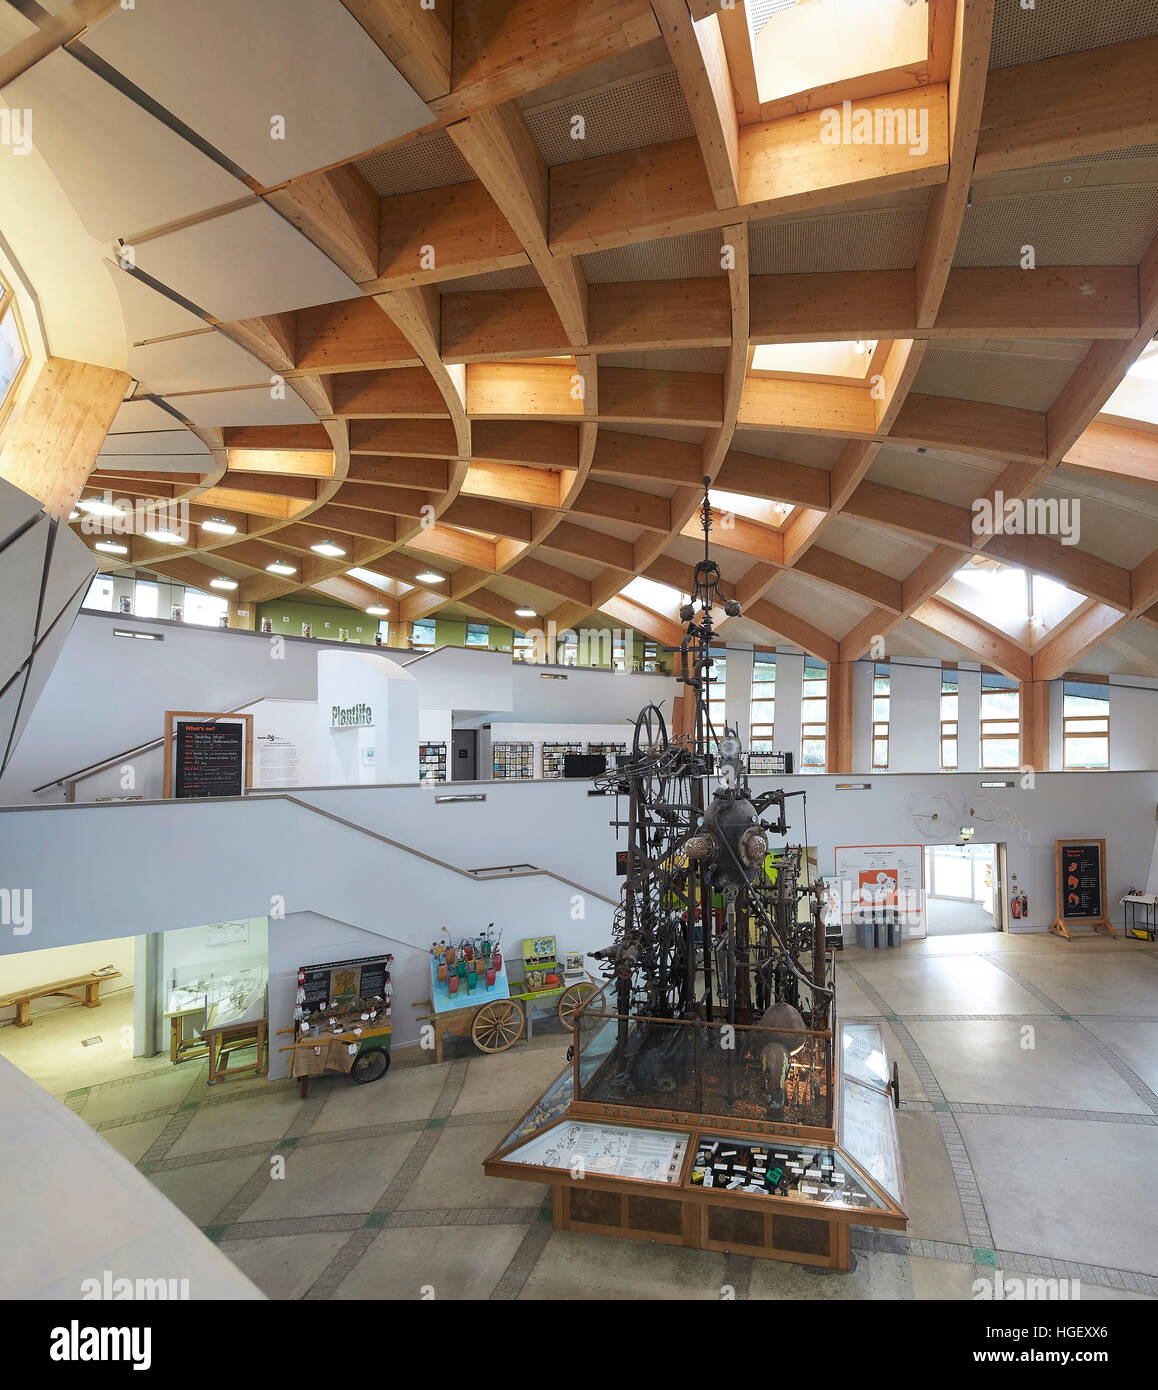 Brettschichtholz-Struktur der Ausstellungsfläche. Eden Project, Bodelva, Vereinigtes Königreich. Architekt: Grimshaw, 2016. Stockfoto